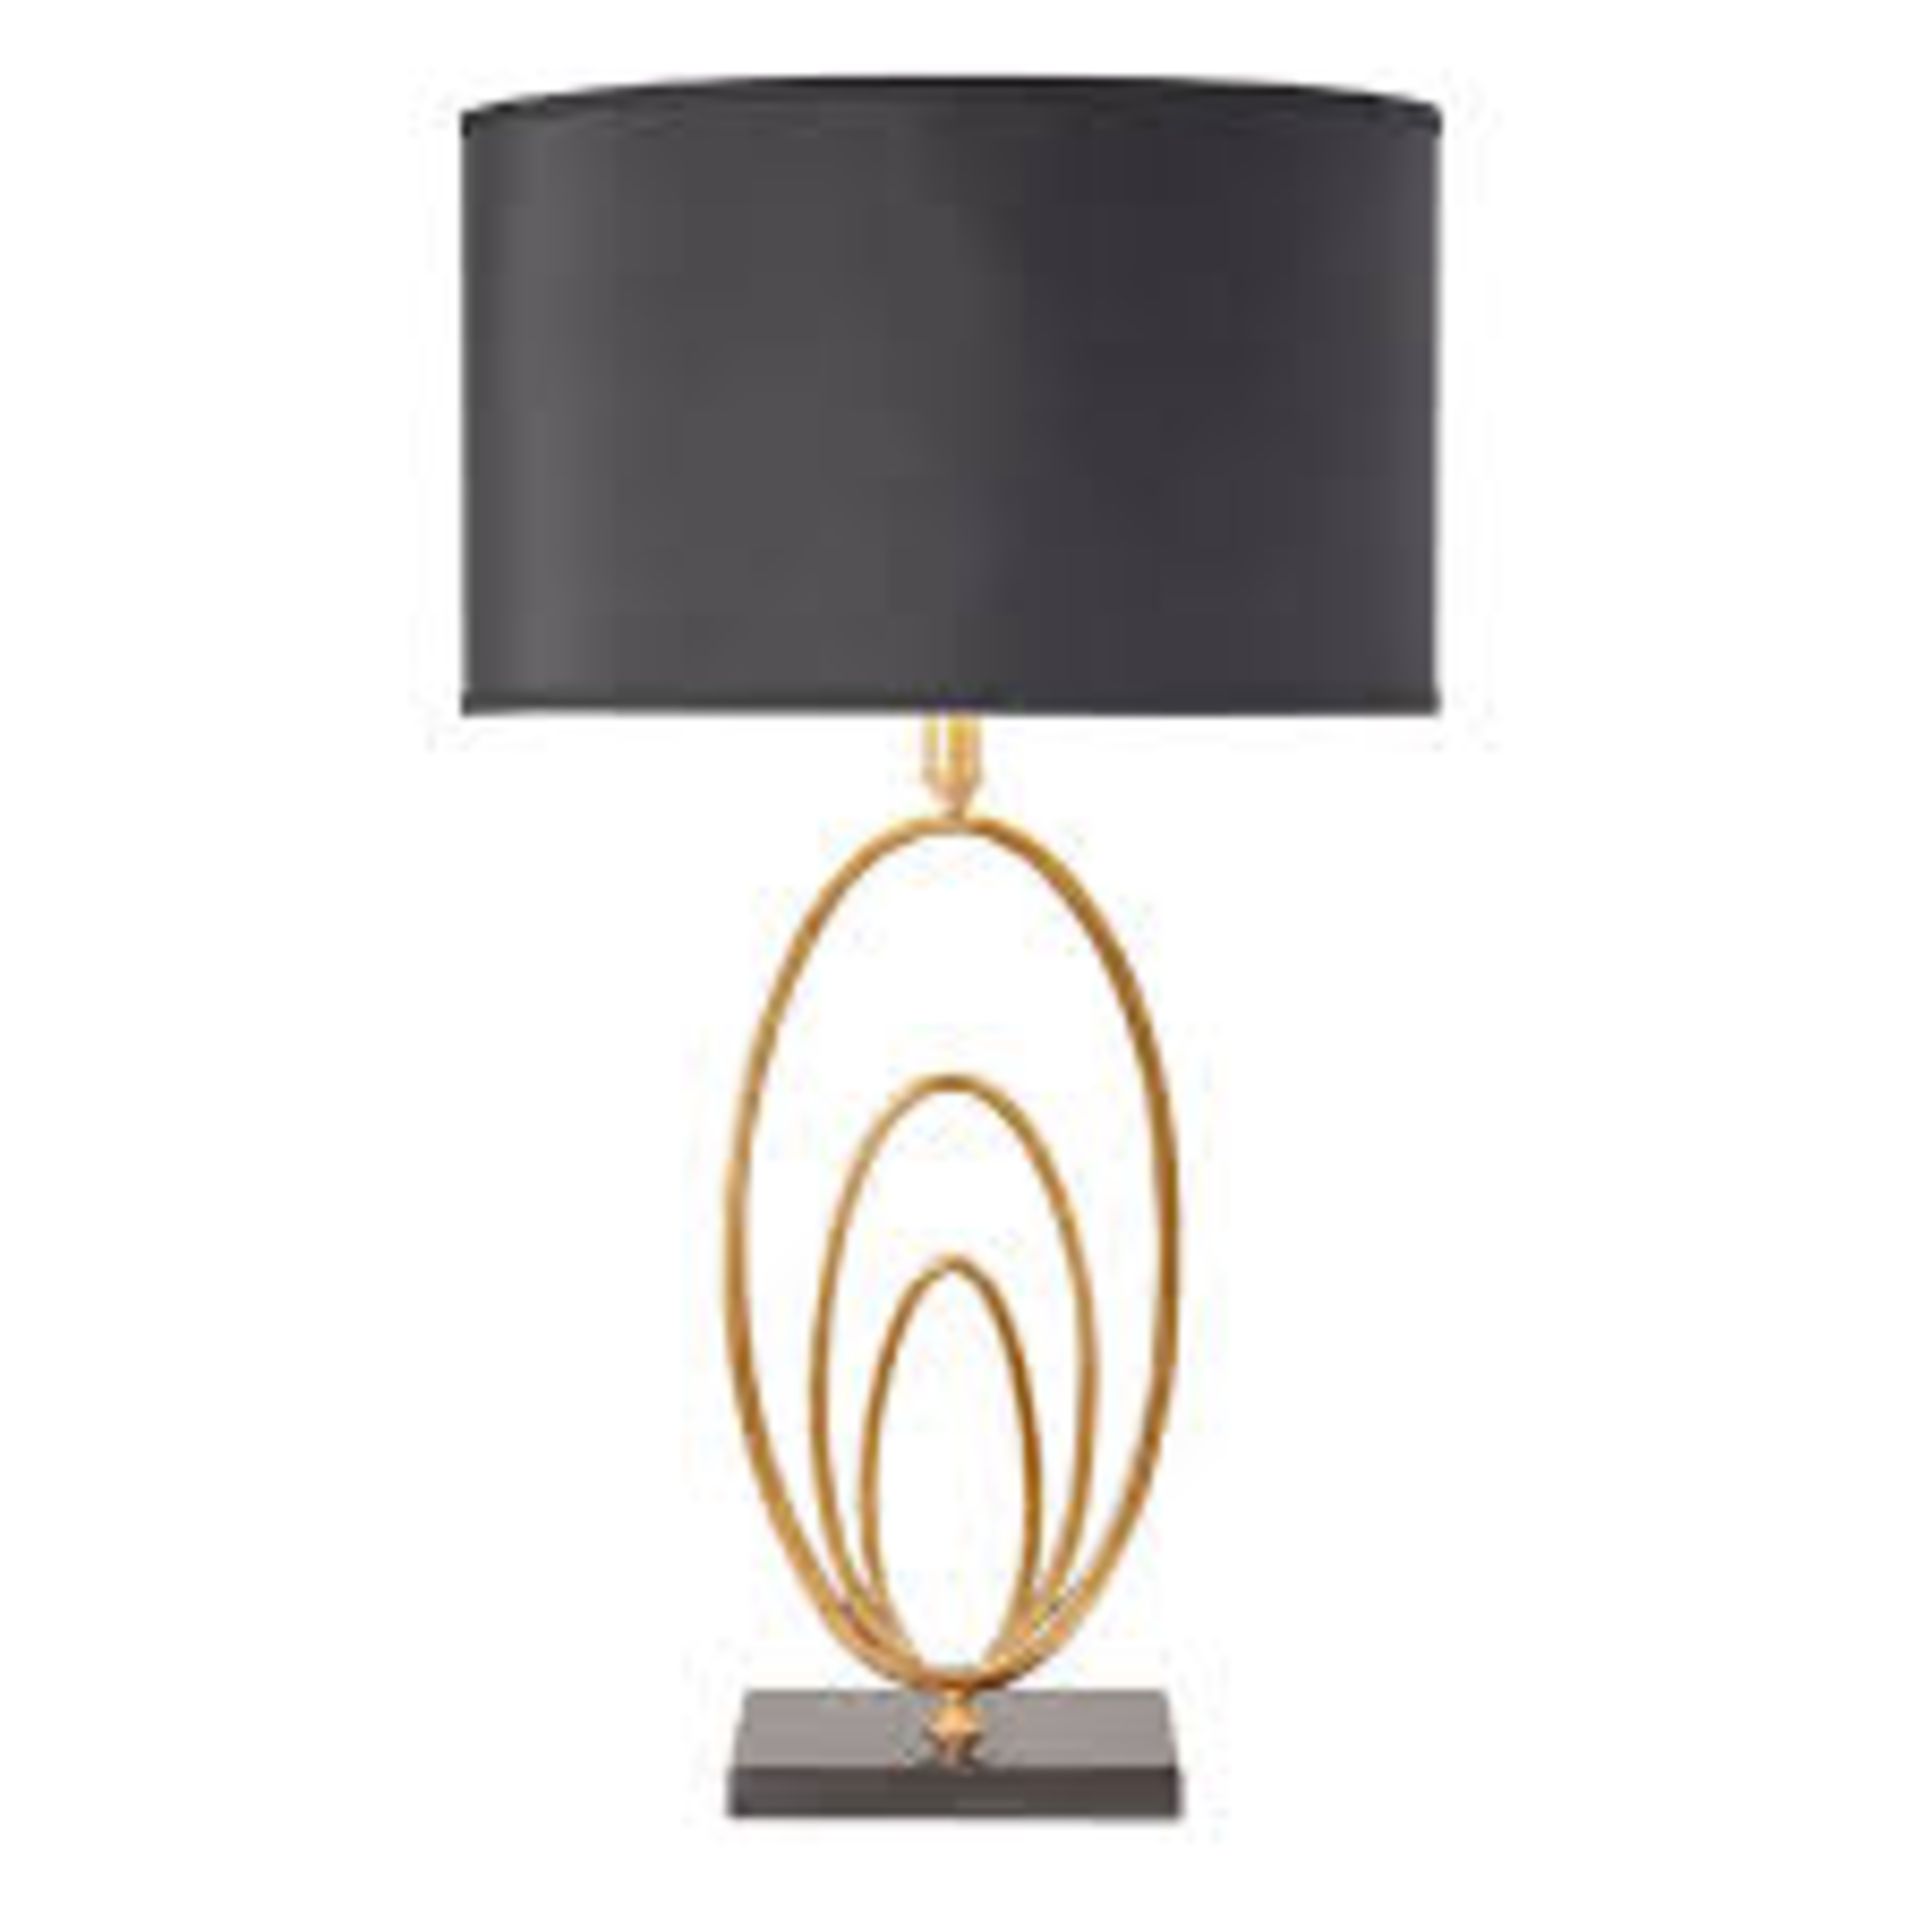 Boxed Enden Lighting Designer Table Lamp RRP £100